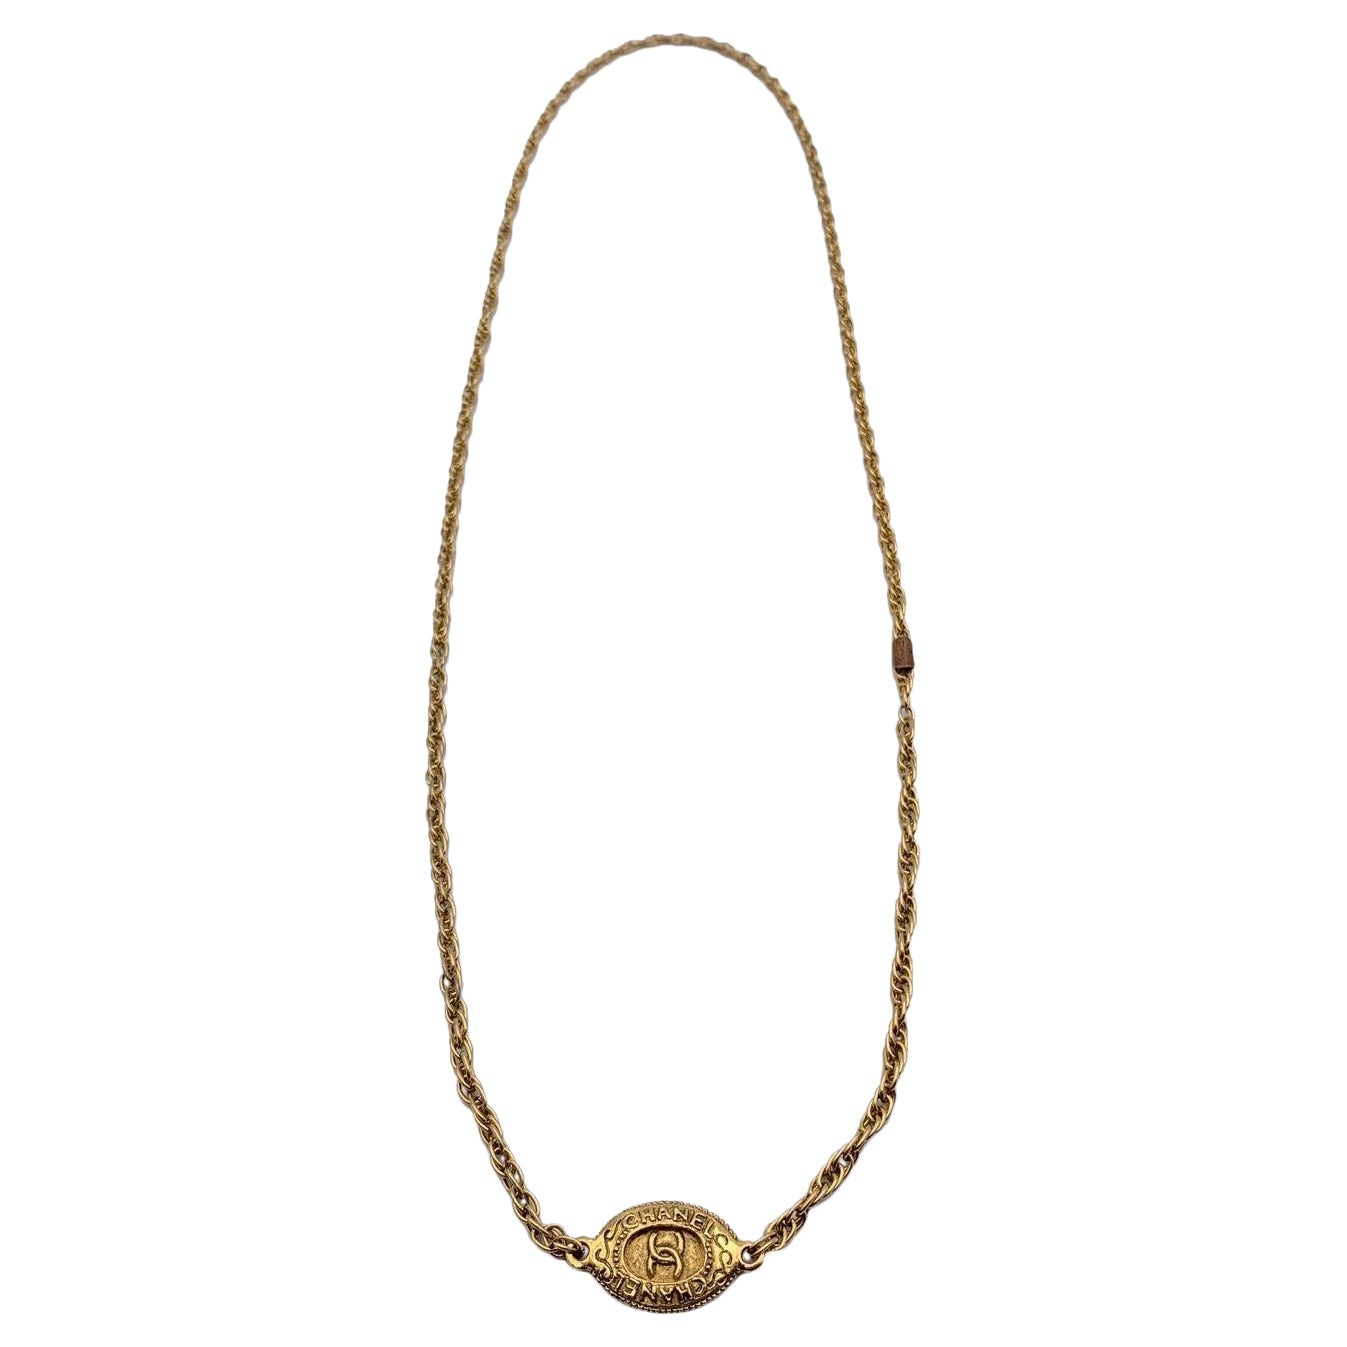 Chanel, collier long médaillon ovale vintage en métal doré, années 1970